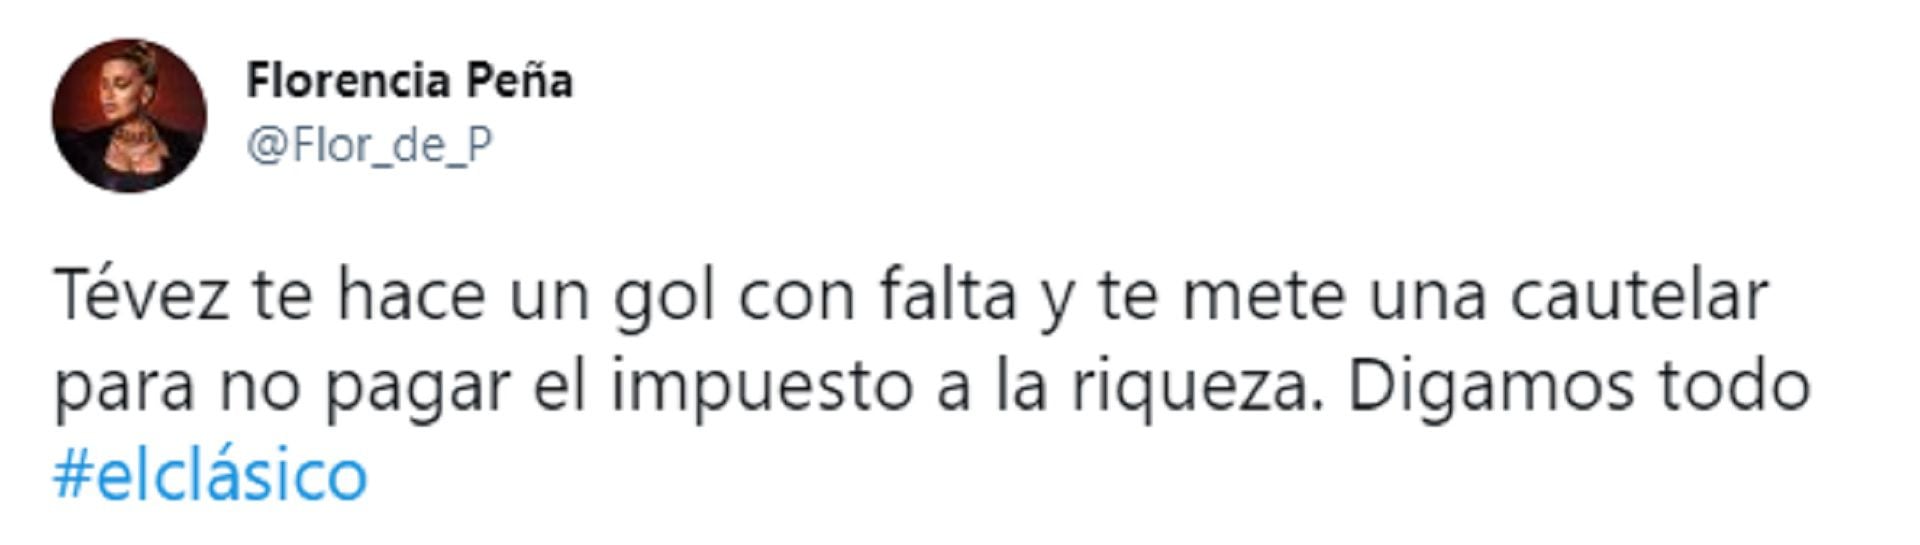 El tweet de Florencia Peña contra Carlos Tevez